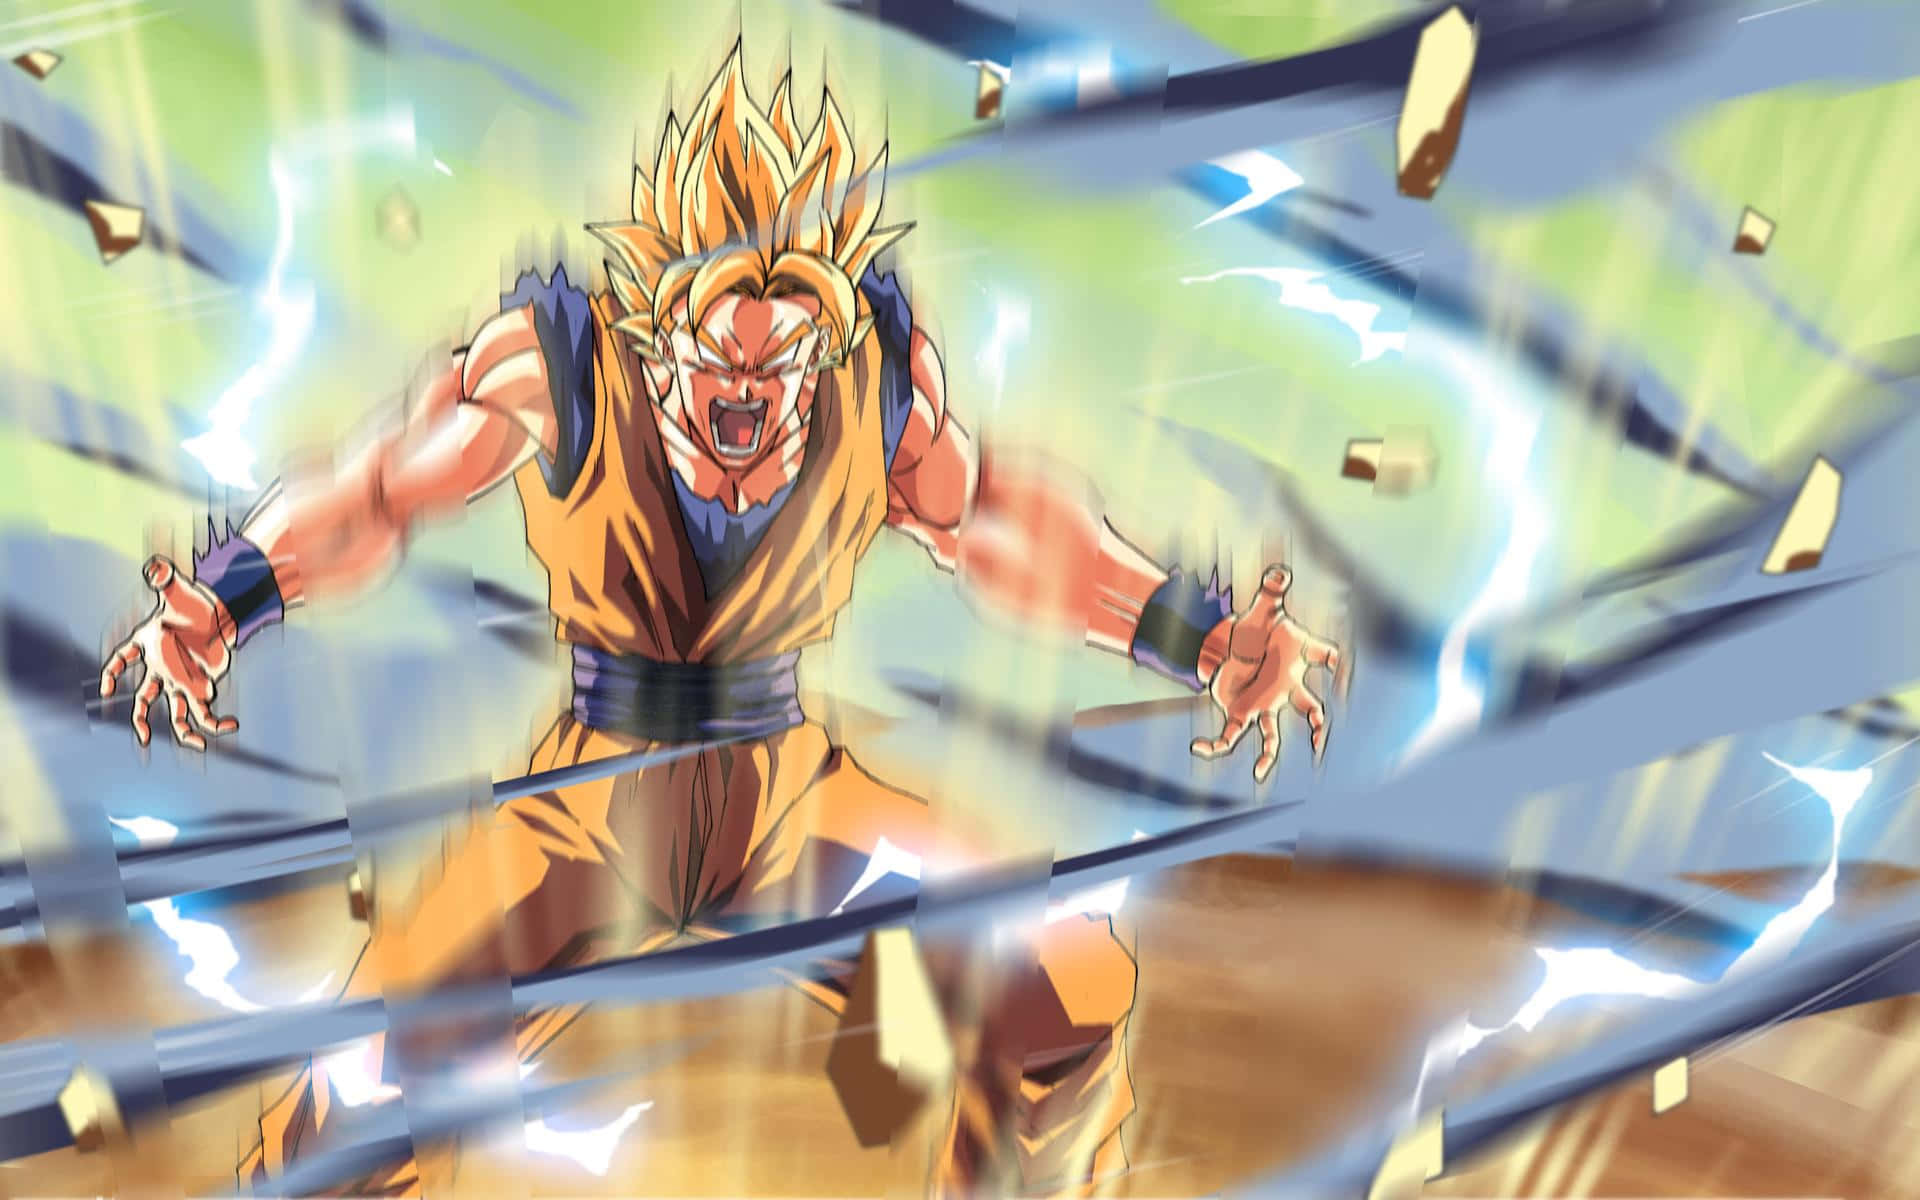 Angry Goku Wallpaper: Nếu bạn yêu thích sự nóng giận của Goku khi chiến đấu, hãy không bỏ qua hình nền Angry Goku Wallpaper này. Với cảm giác mạnh mẽ và quyết đoán, Goku sẽ trở thành nguồn cảm hứng lý tưởng cho bạn.